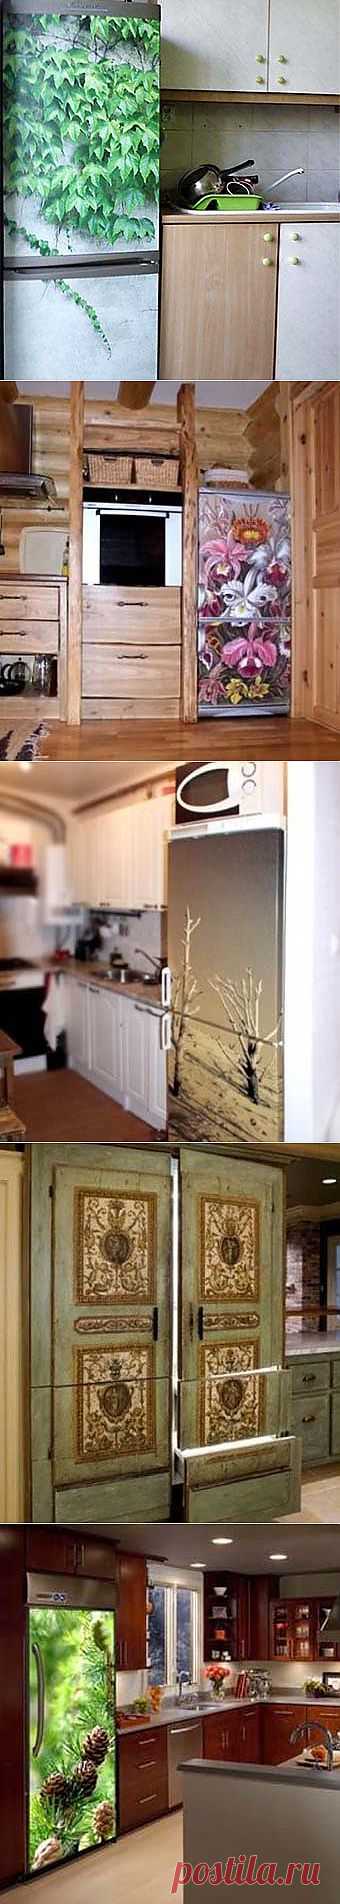 Наклейки на холодильник: необычный дизайн вашего холодильника - Учимся Делать Все Сами